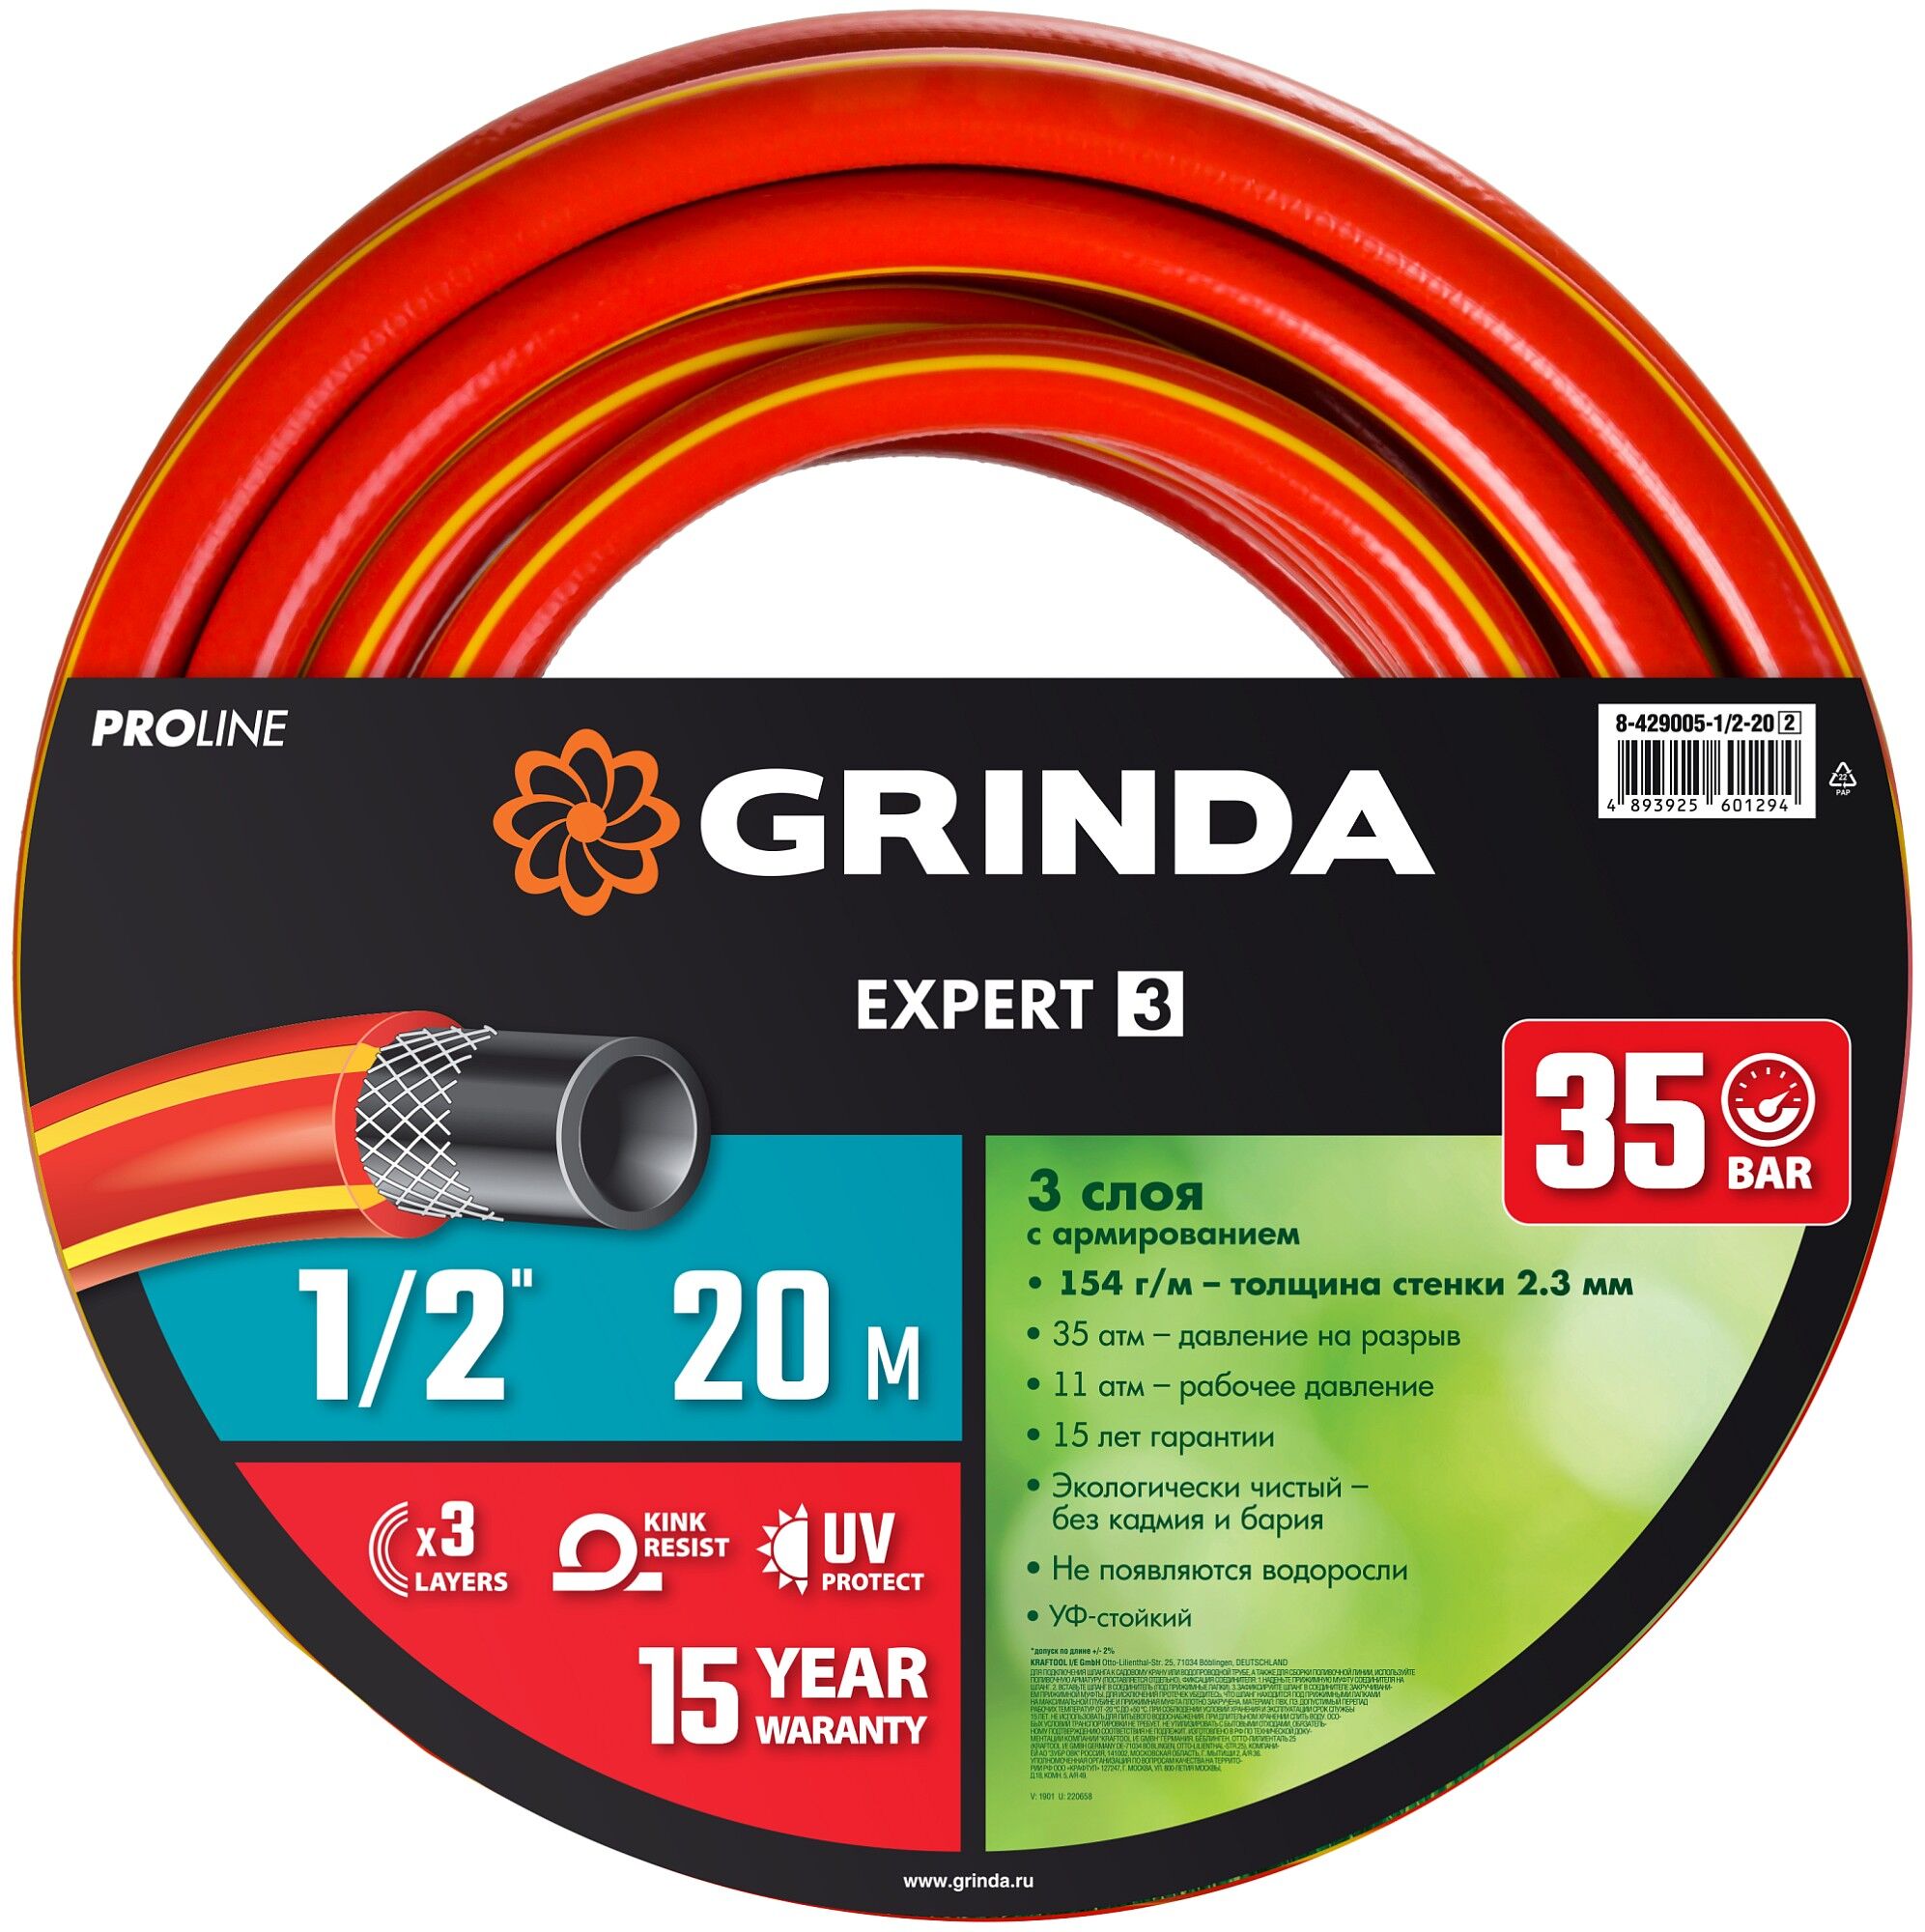 GRINDA EXPERT 3, 1/2″, 20 м, 35 атм, трёхслойный, армированный, поливочный шланг, PROLine (8-429005-1/2-20) 8-429005-1/2